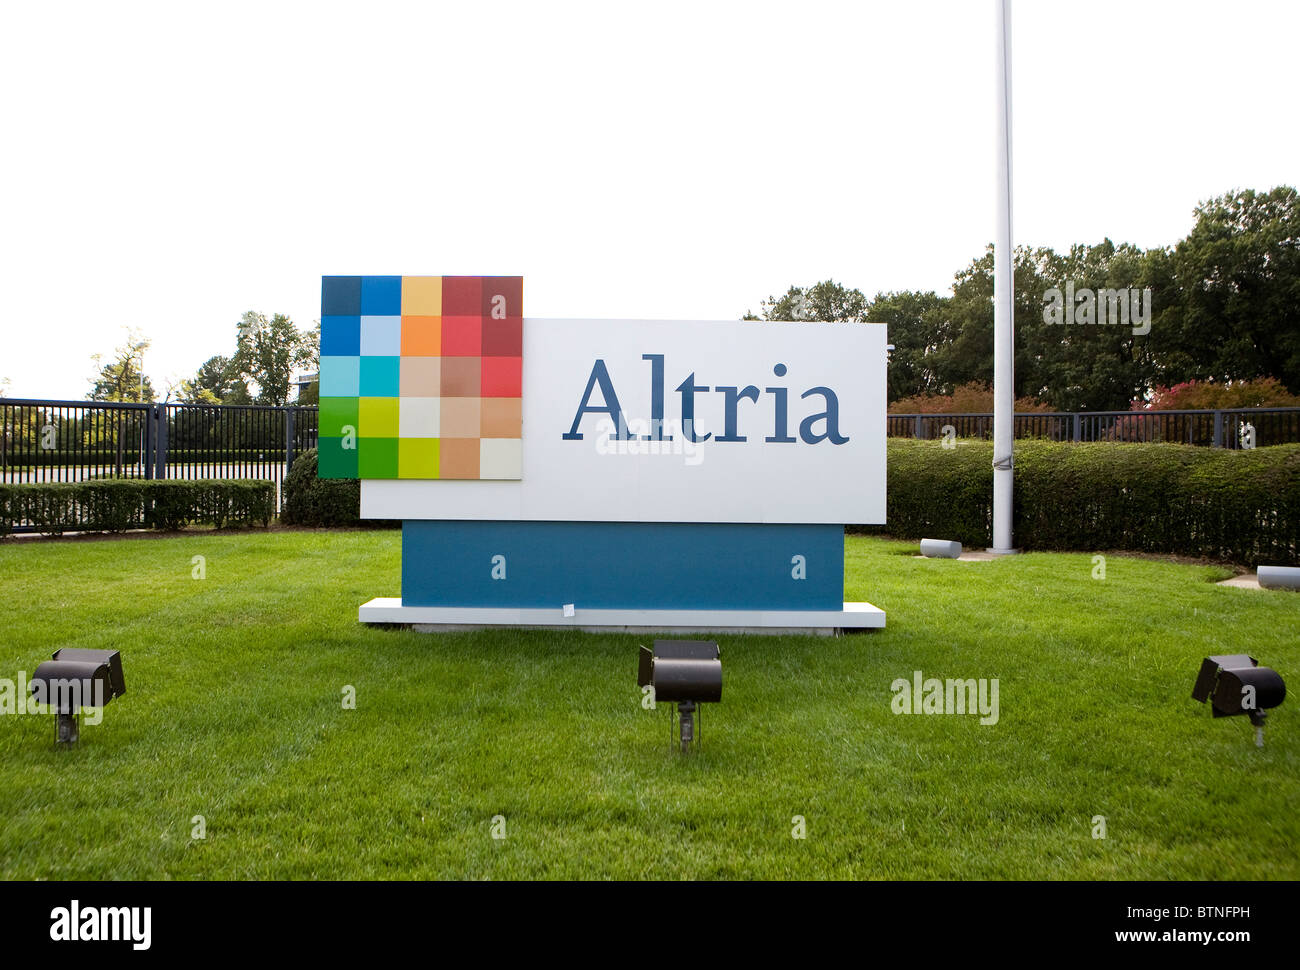 Altria Group Headquarters. Altria ist die Muttergesellschaft von Philip Morris USA Hersteller von Marlboro Zigaretten. Stockfoto